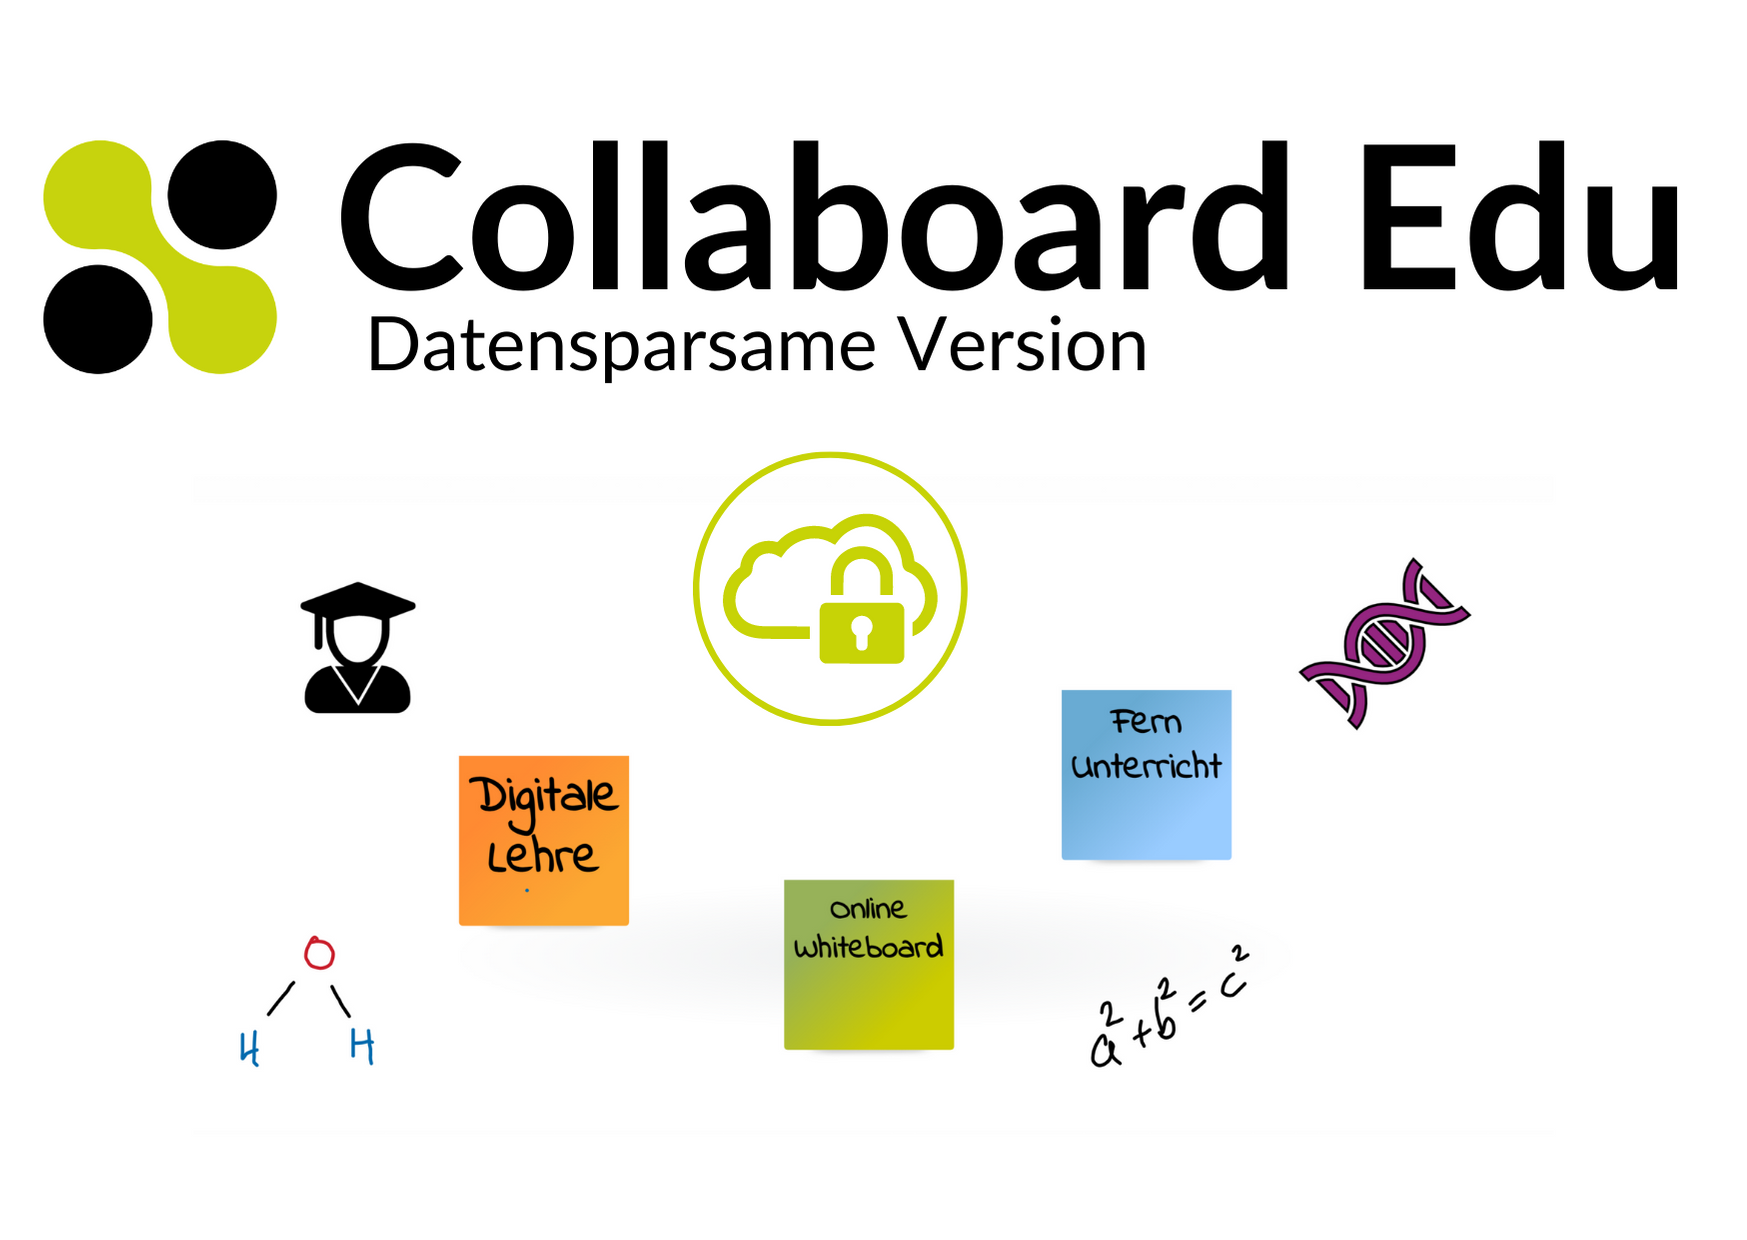 Collaboard EDU als datensparsame Version für Bildungseinrichtungen - DSGVO konform